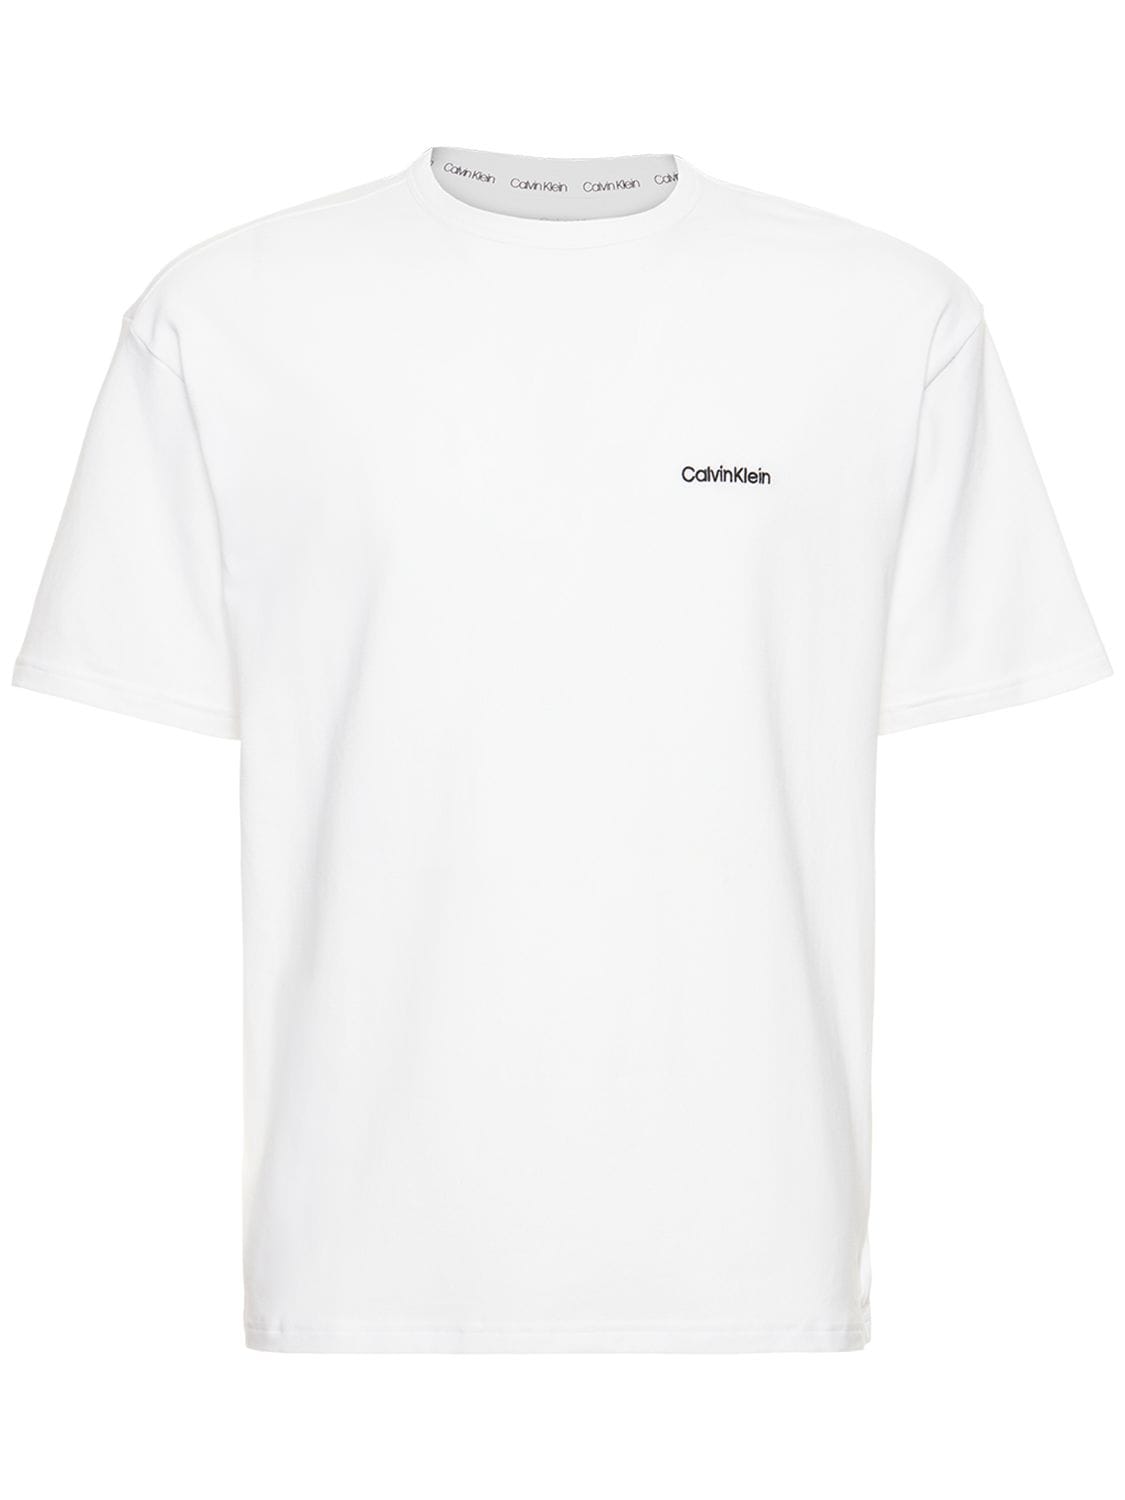 T-shirt En Coton Mélangé Imprimé Logo - CALVIN KLEIN UNDERWEAR - Modalova